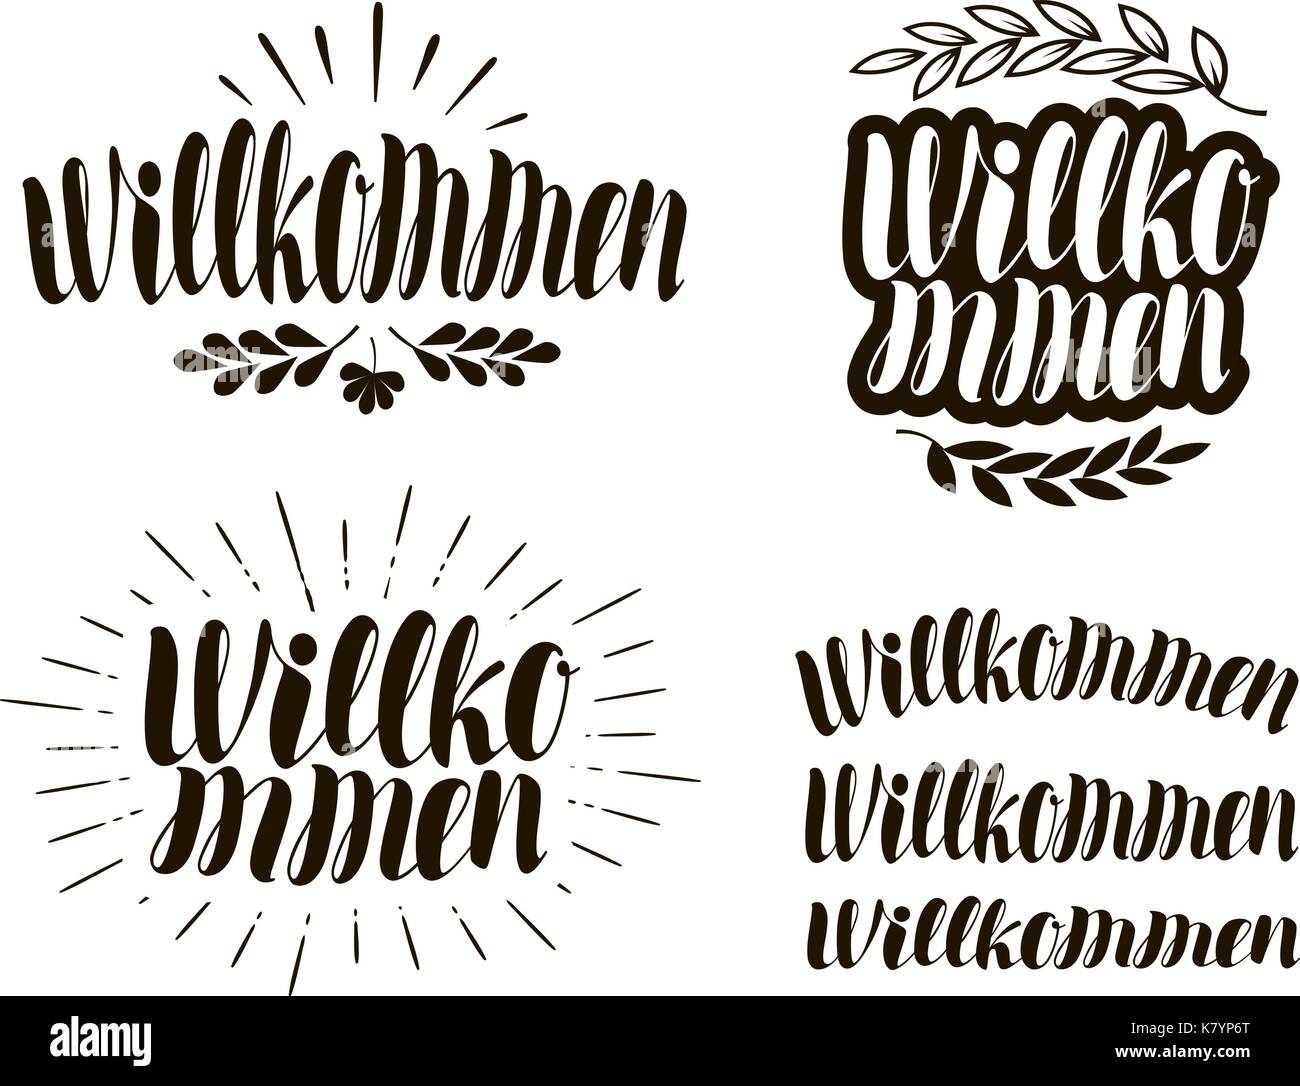 Willkommen, letras manuscritas ilustración vectorial de caligrafía. Ilustración del Vector